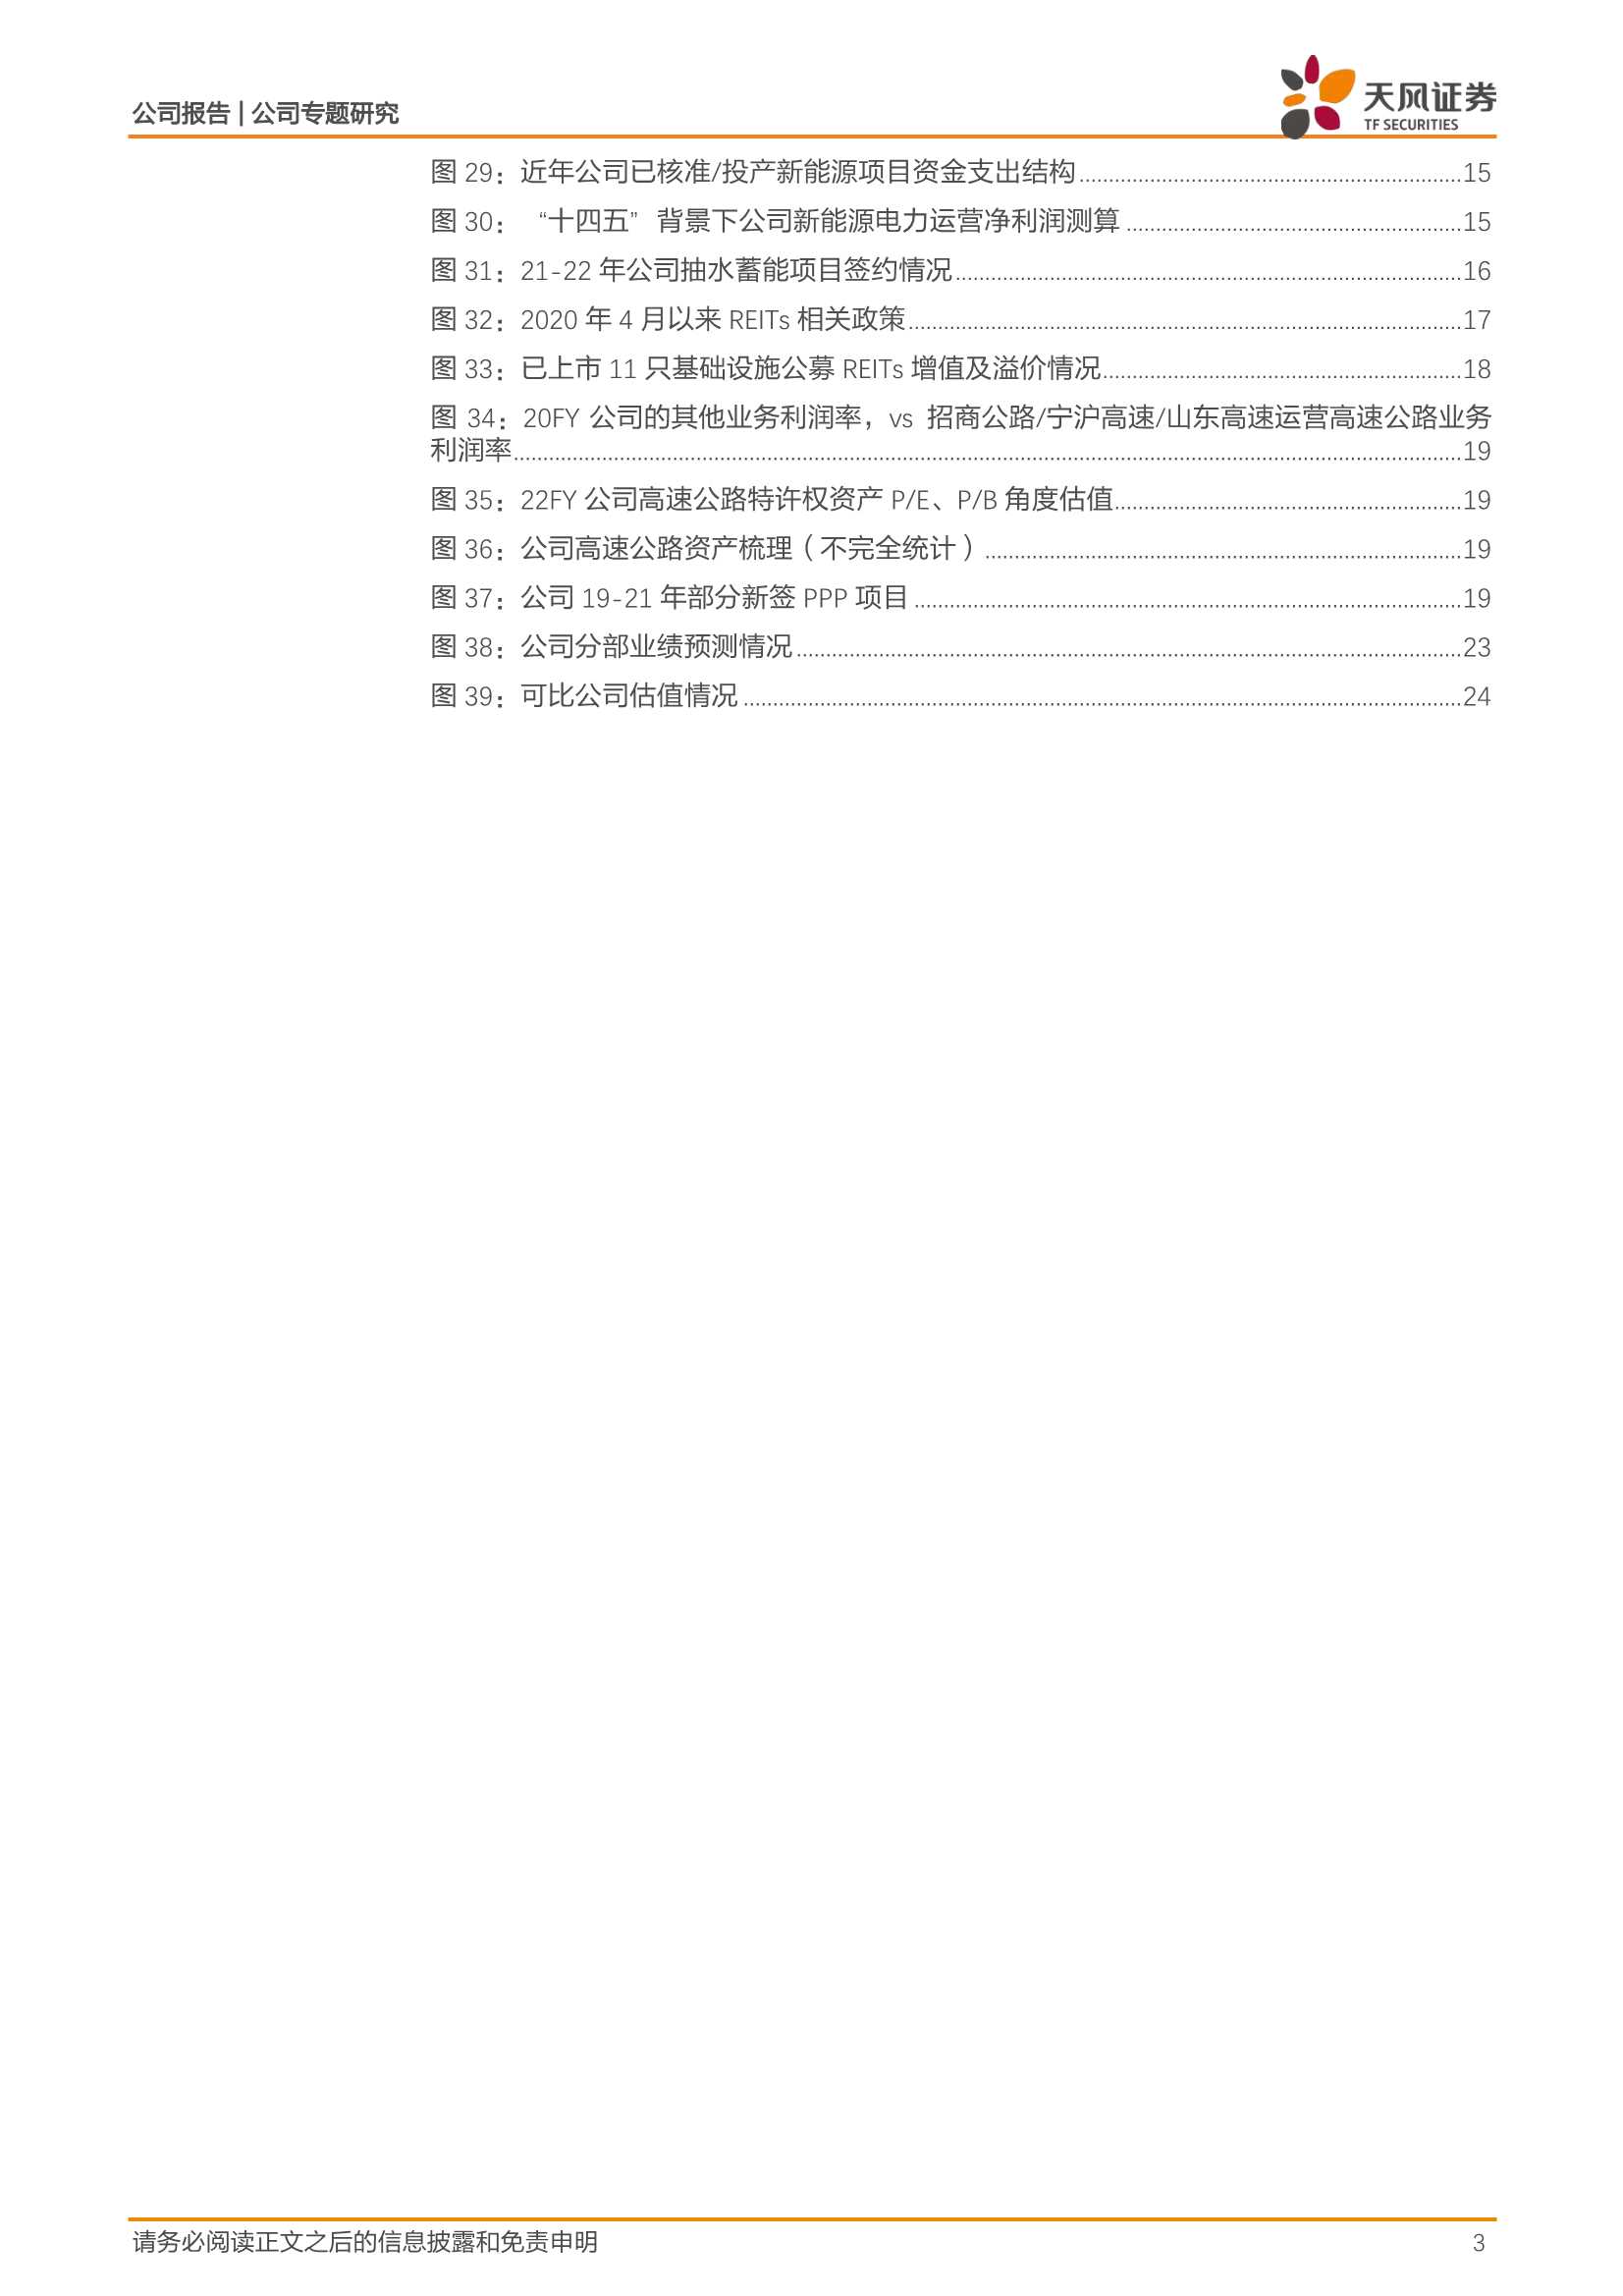 天风证券-中国电建-601669-央企系列3：电建资产特征及展望-20220305-26页